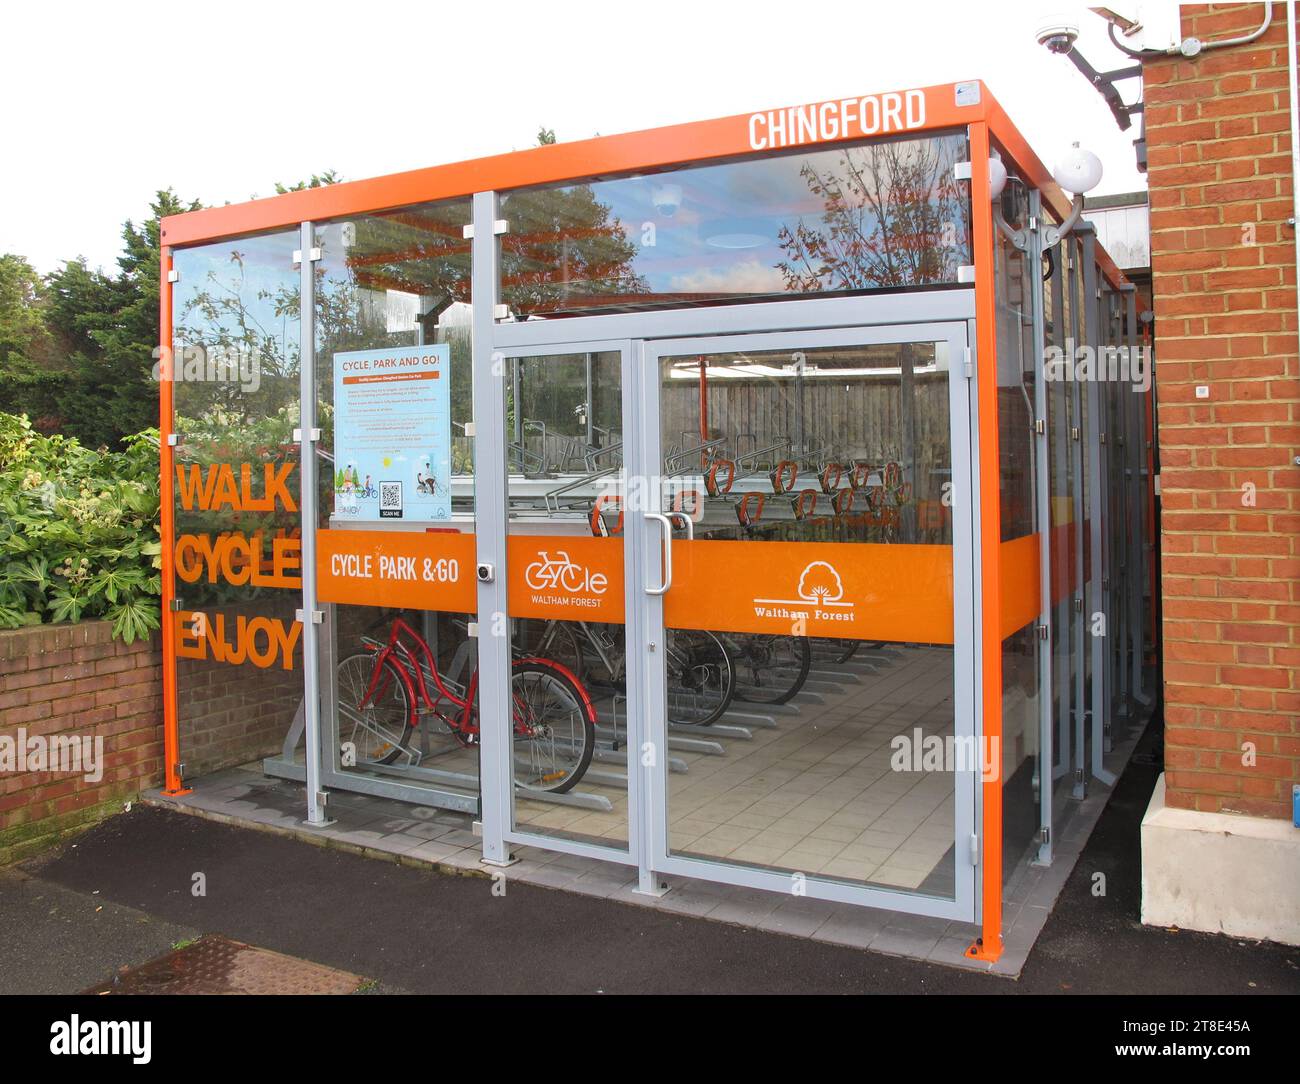 Cycle Hub presso la stazione ferroviaria di Chingford, Londra, Regno Unito. Fornisce un deposito bici sicuro e sicuro per i residenti locali. Foto Stock